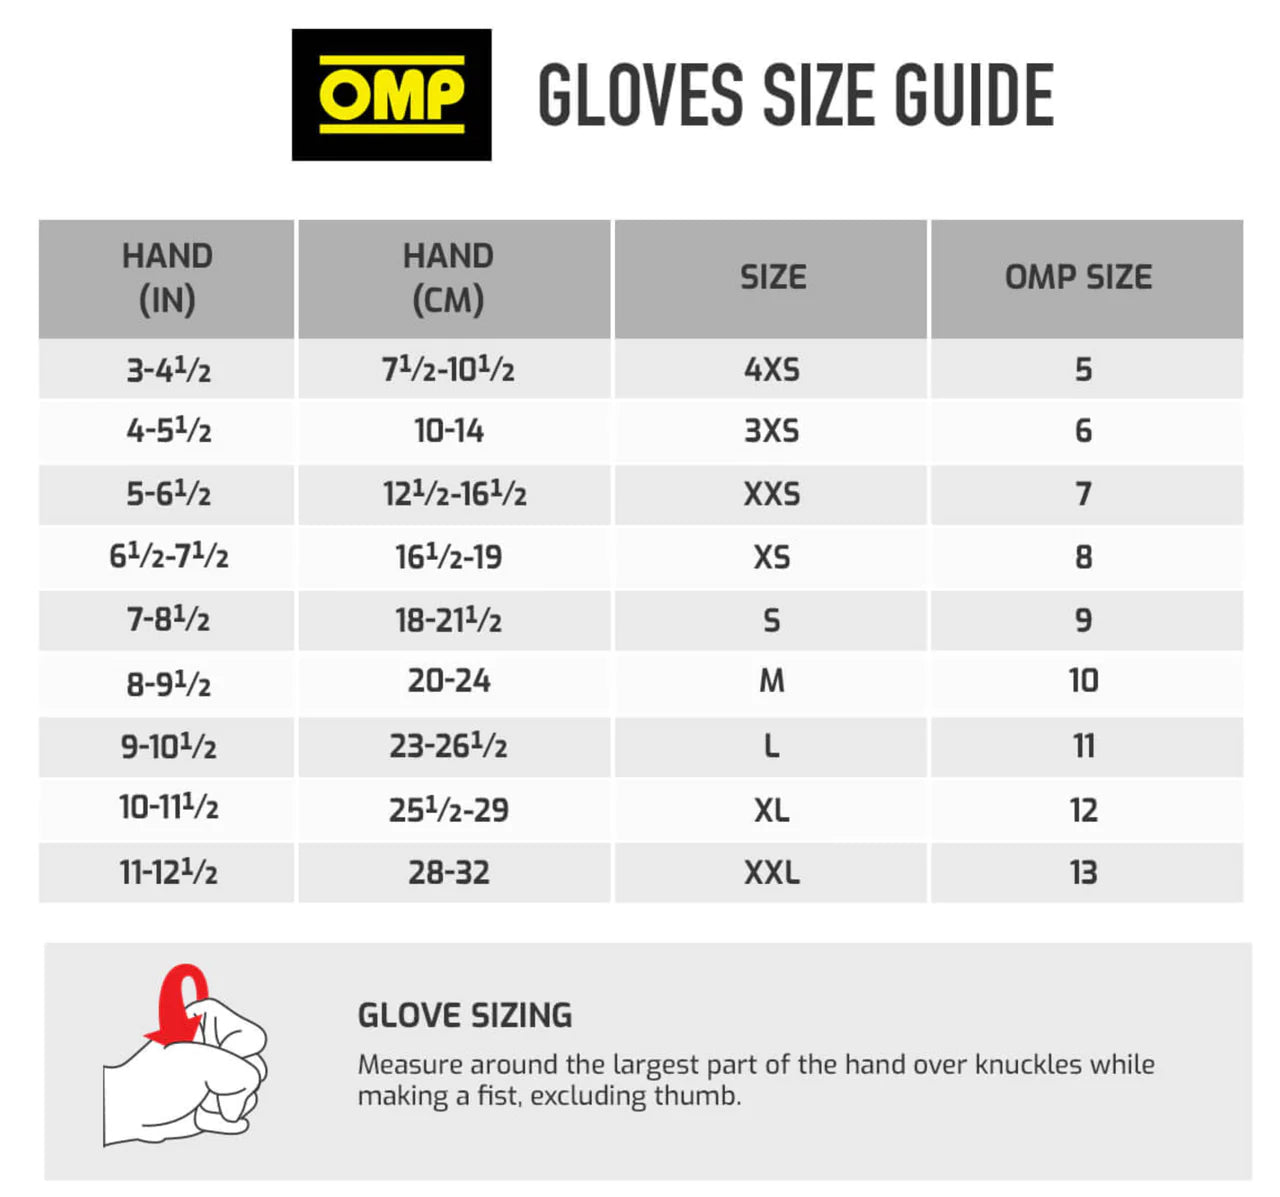 OMP - One Evo X Nomex Gloves